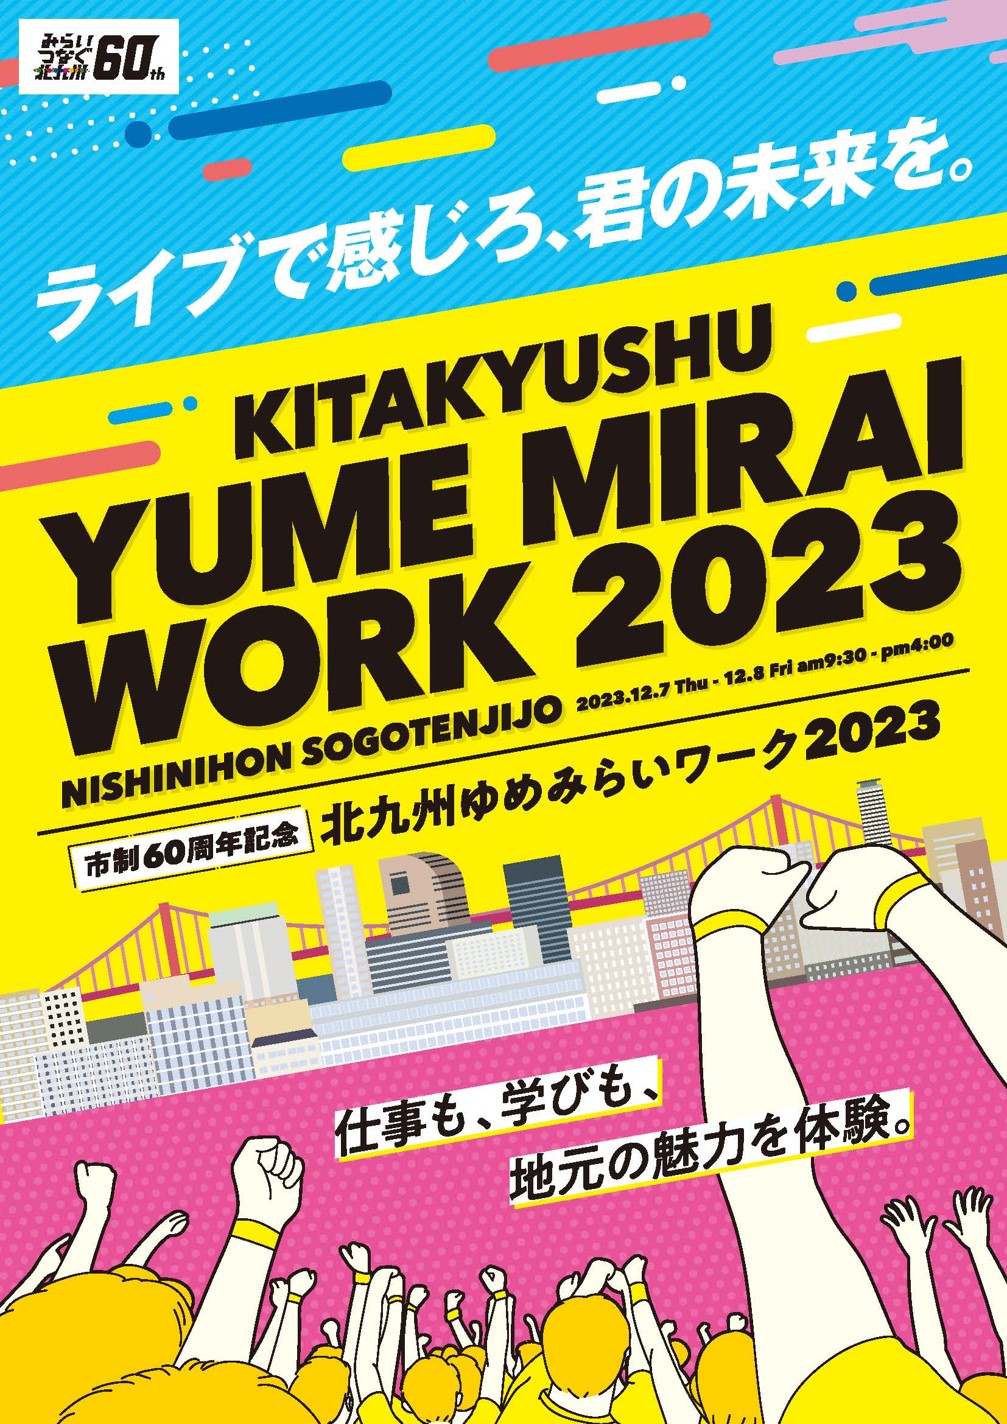 We will be exhibiting at "Kitakyushu Yumemirai Work 2023".